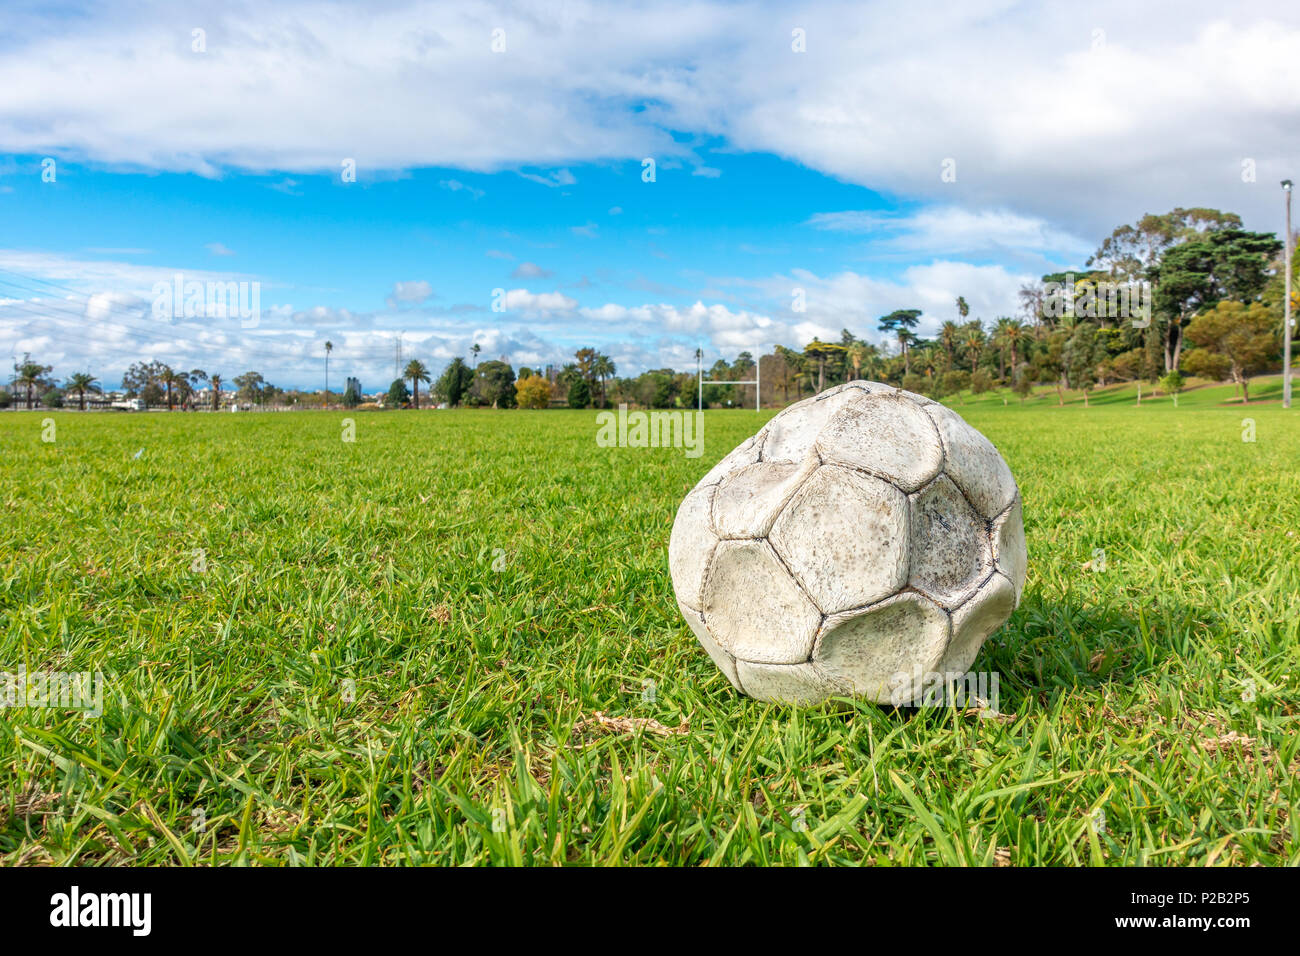 Alte leck Fußball/Fußball auf der grünen Wiese aufgegeben. Konzept der Traurigkeit, Hoffnungslosigkeit und Einsamkeit. Stockfoto